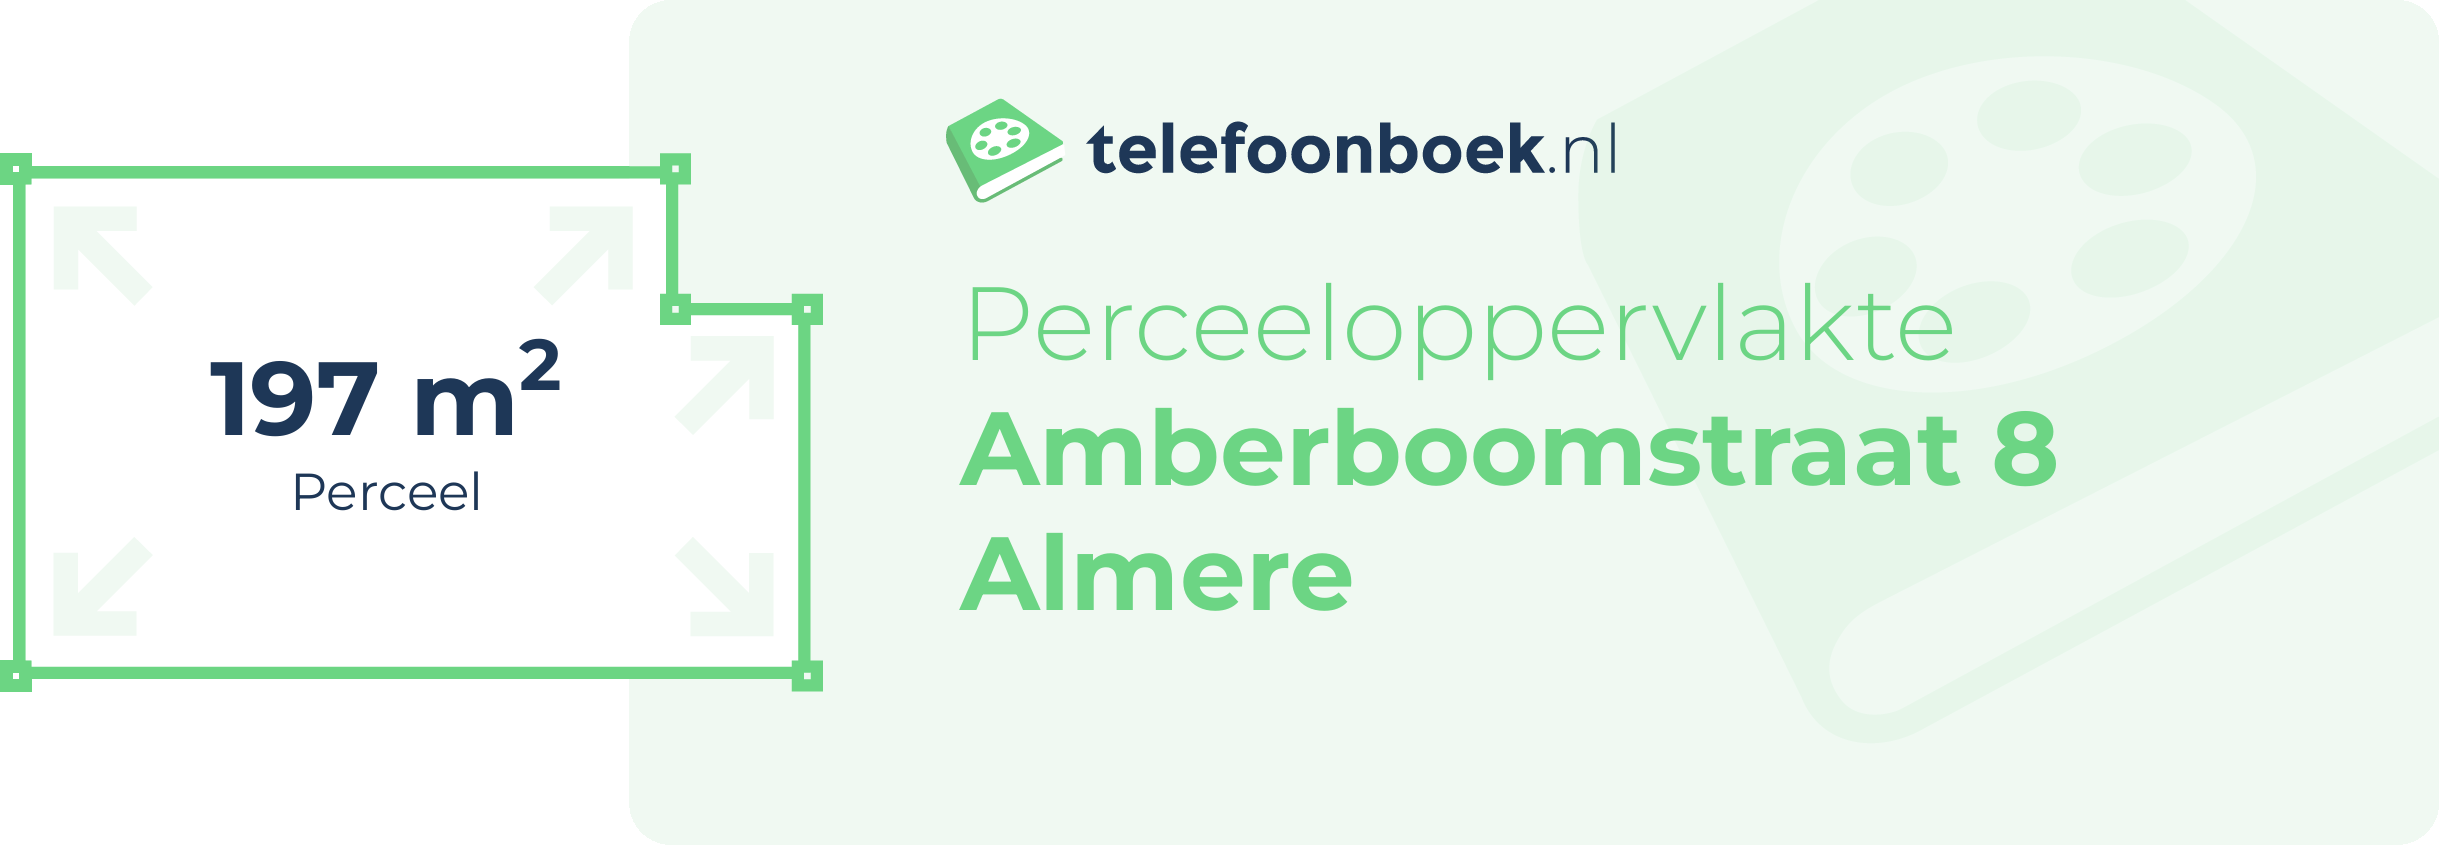 Perceeloppervlakte Amberboomstraat 8 Almere